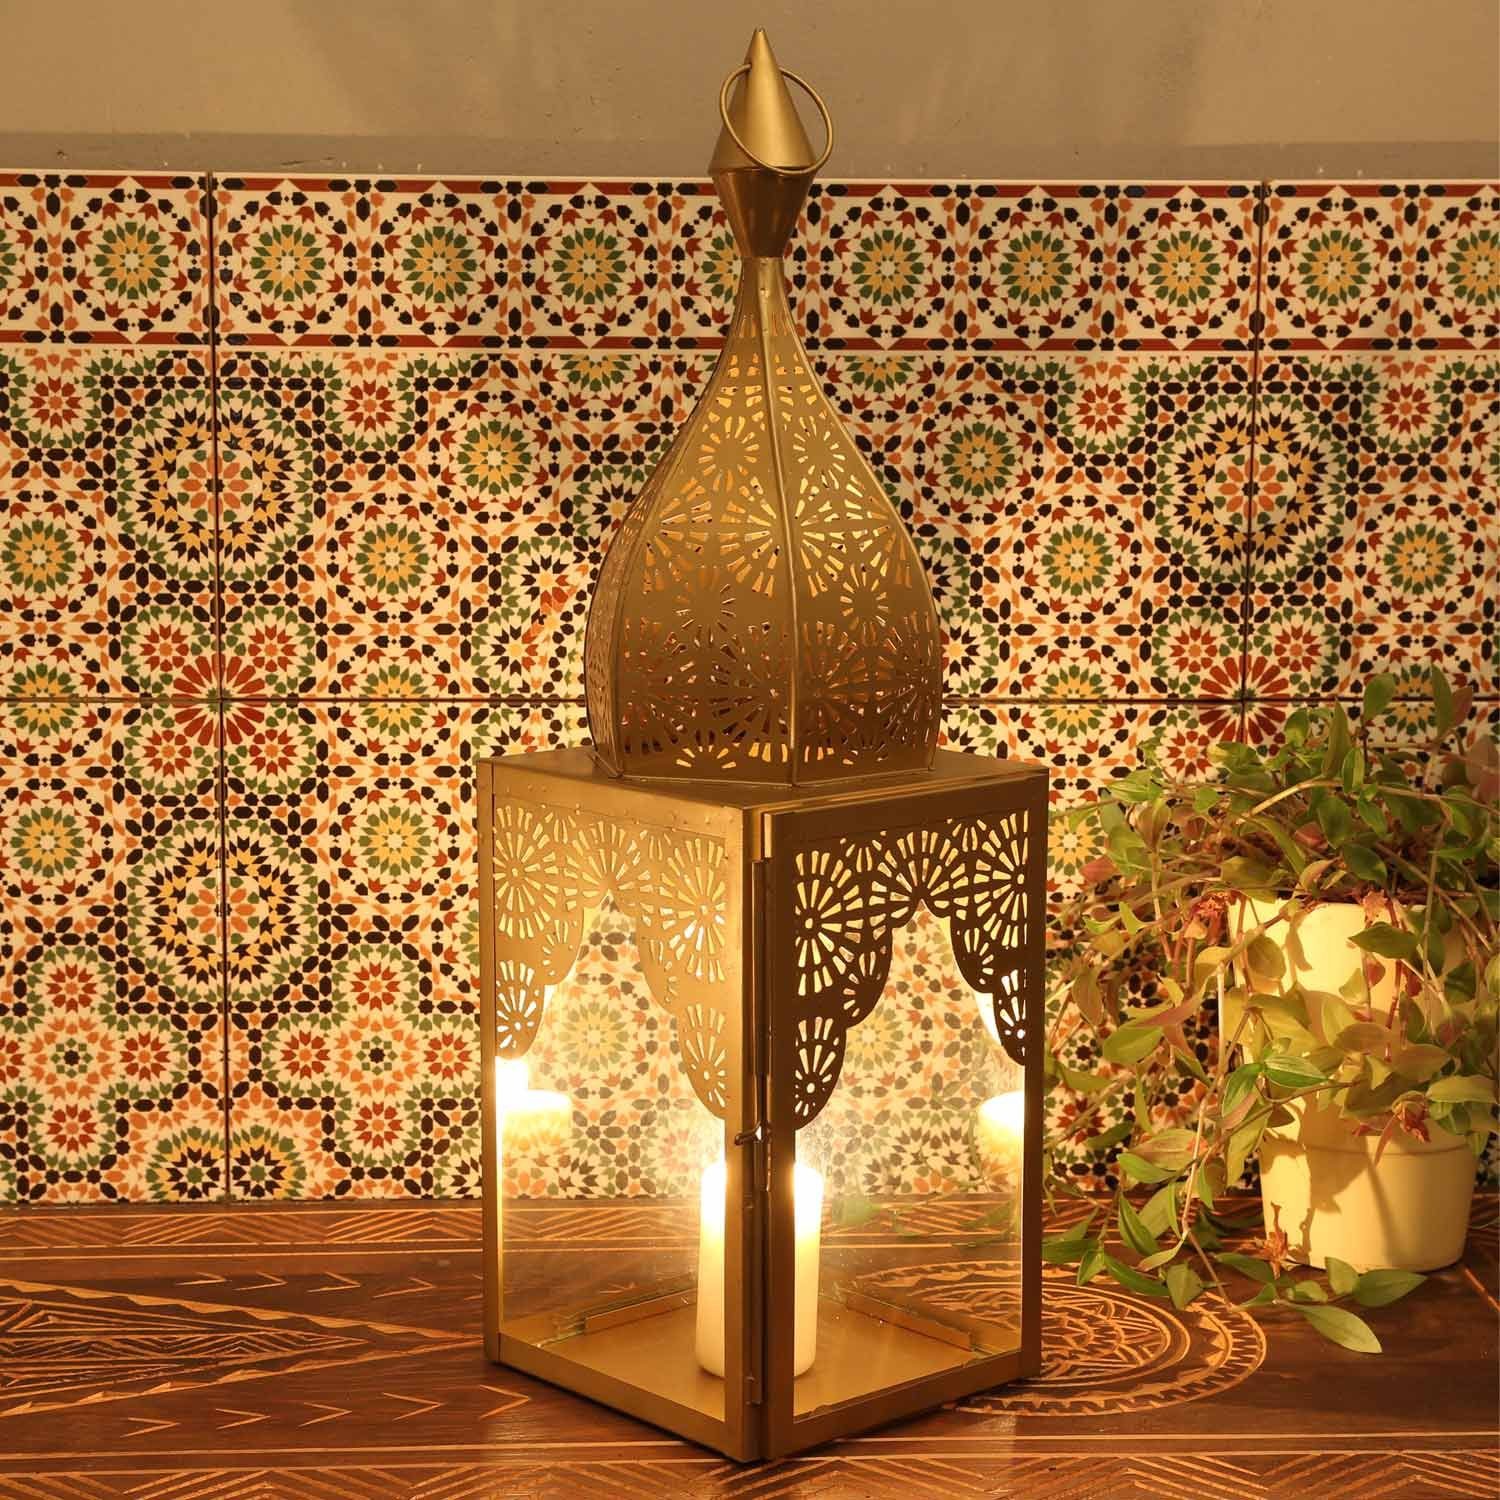 Casa Moro Windlicht Orientalische Laterne Modena Gold L aus Glas & Metall Höhe 60cm (Minaretten Form, Marokkanische Glaslaterne, Windlicht Kerzenhalter, schöne Weihnachtsbeleuchtung), aus traditioneller Handarbeit IRL640